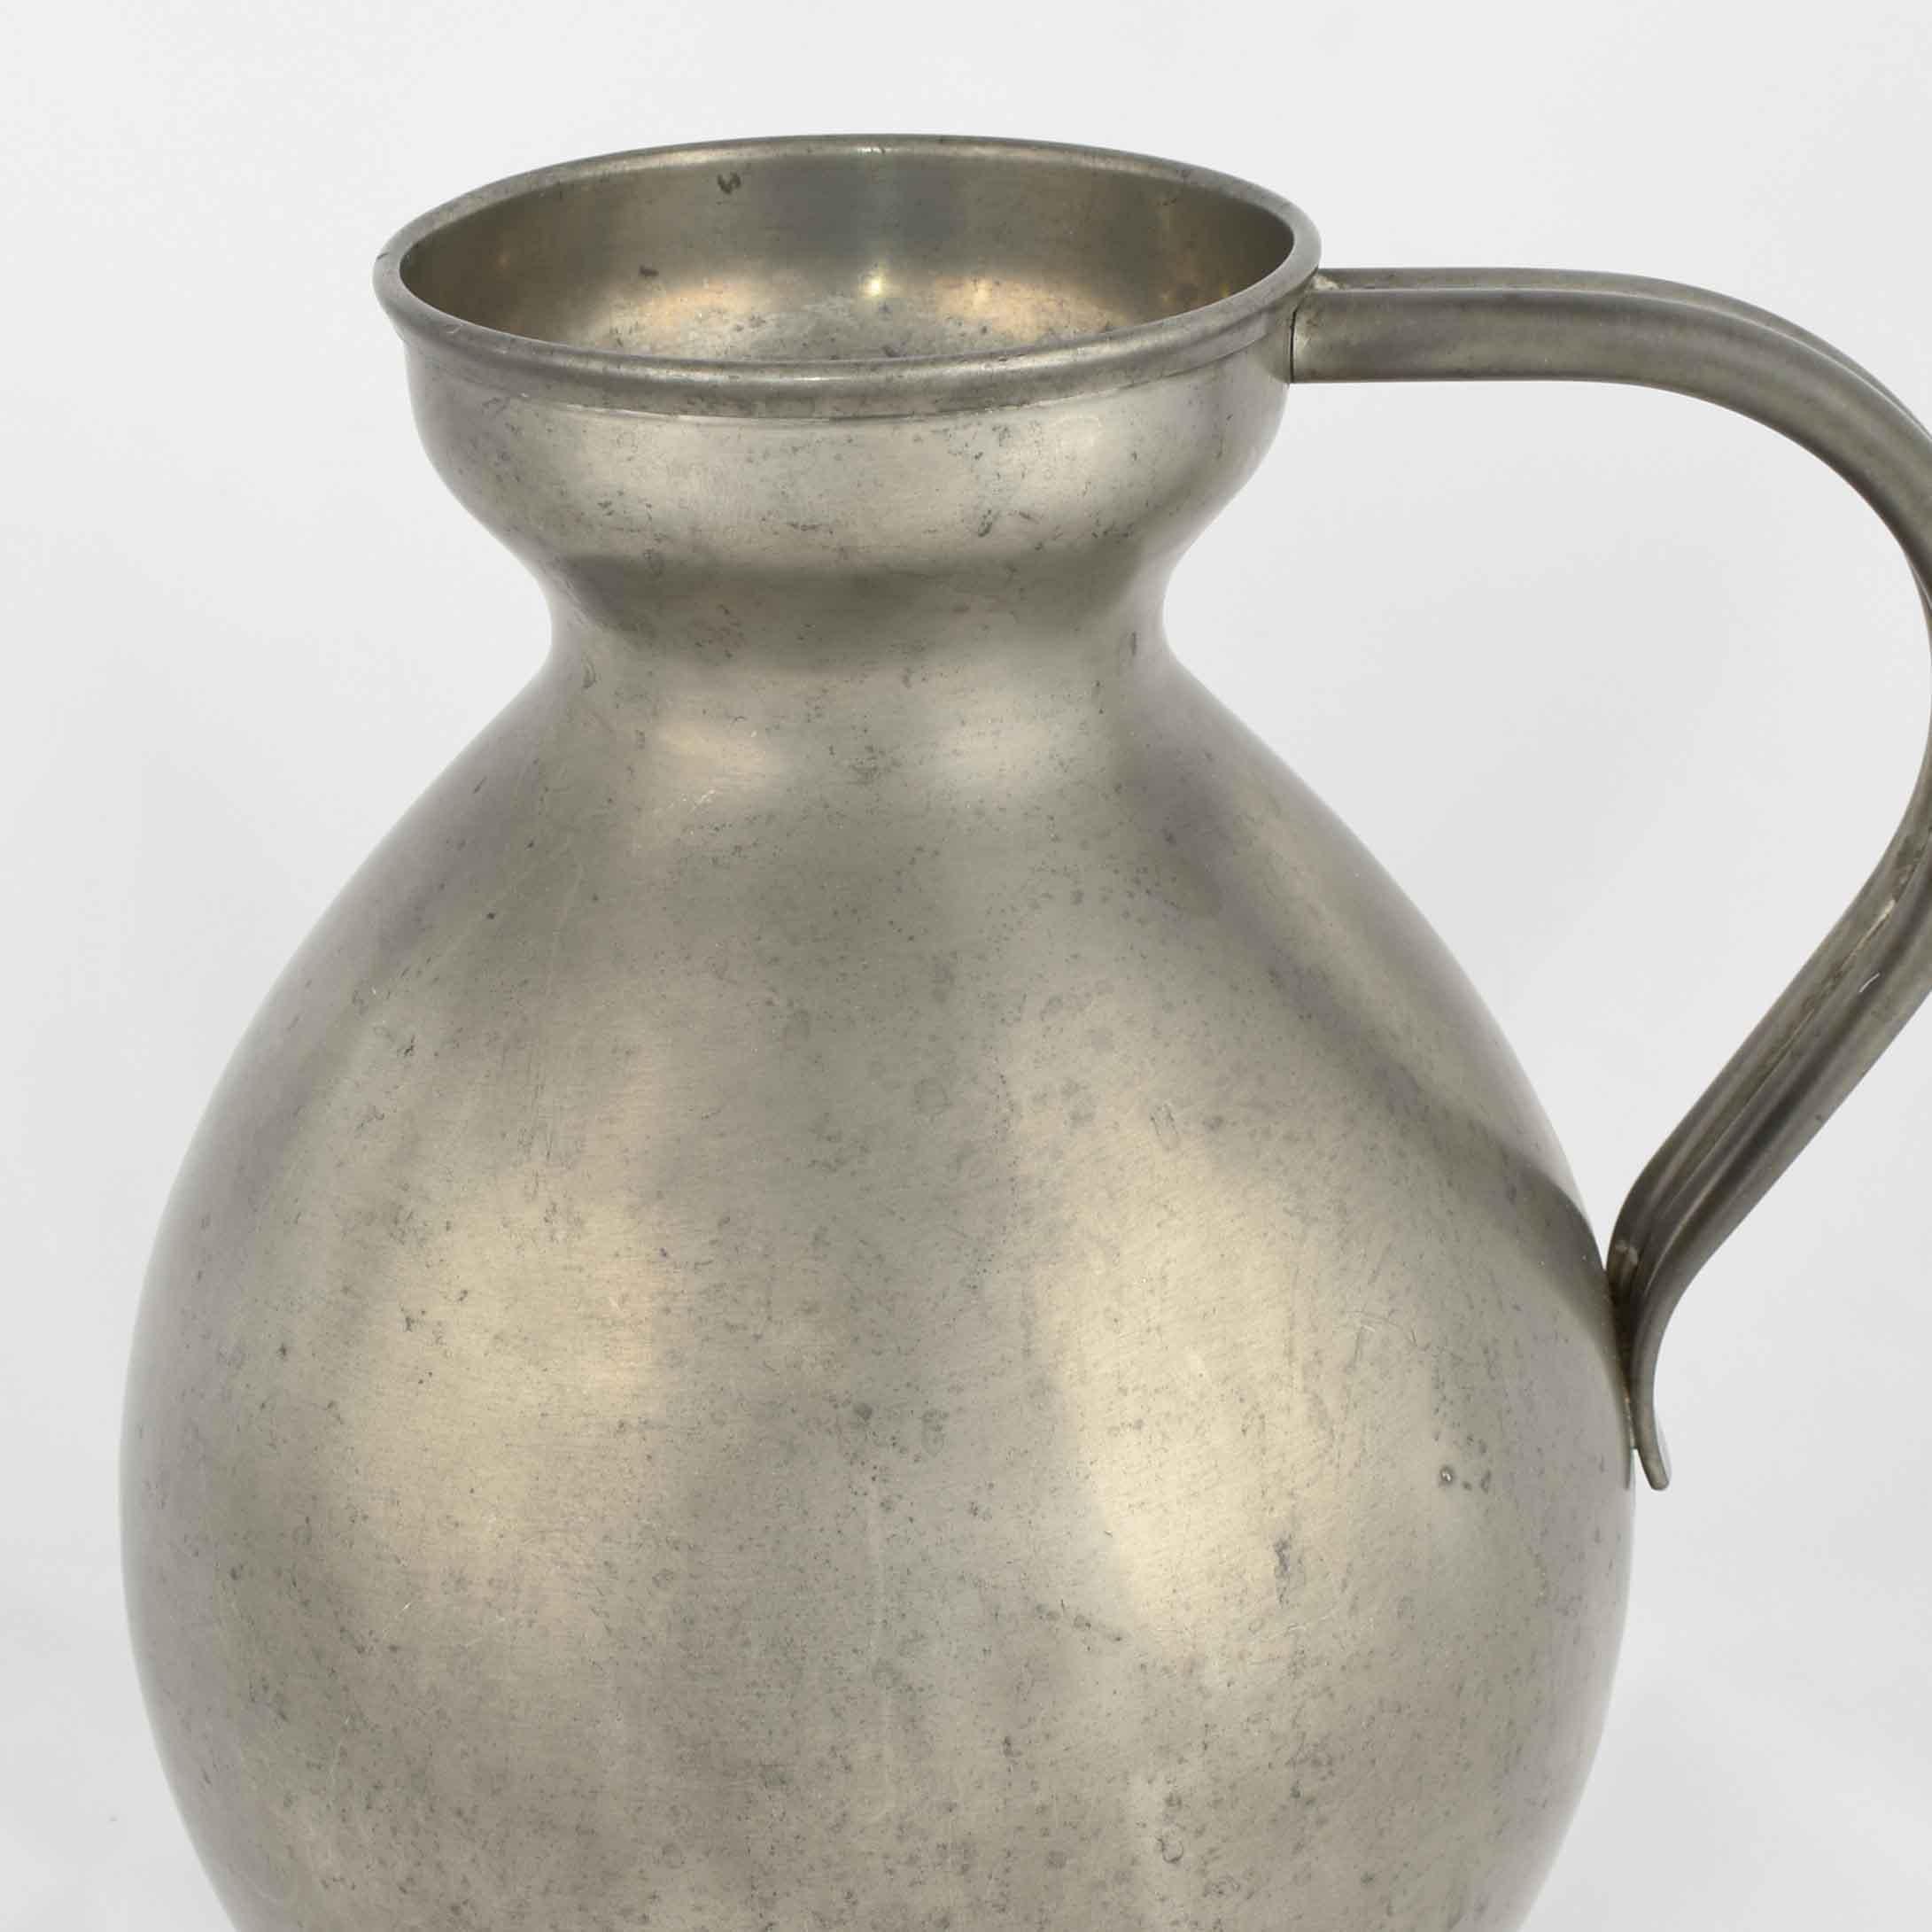 Die Vase mit Henkel ist ein originelles Dekorationsobjekt, das in den 1930er Jahren in Deutschland hergestellt wurde. 

Original Metallarbeiten.

Erstellt von Harald Buchrucker. 

Guter Zustand: kleine Anzeichen von Alterung.

Schönes